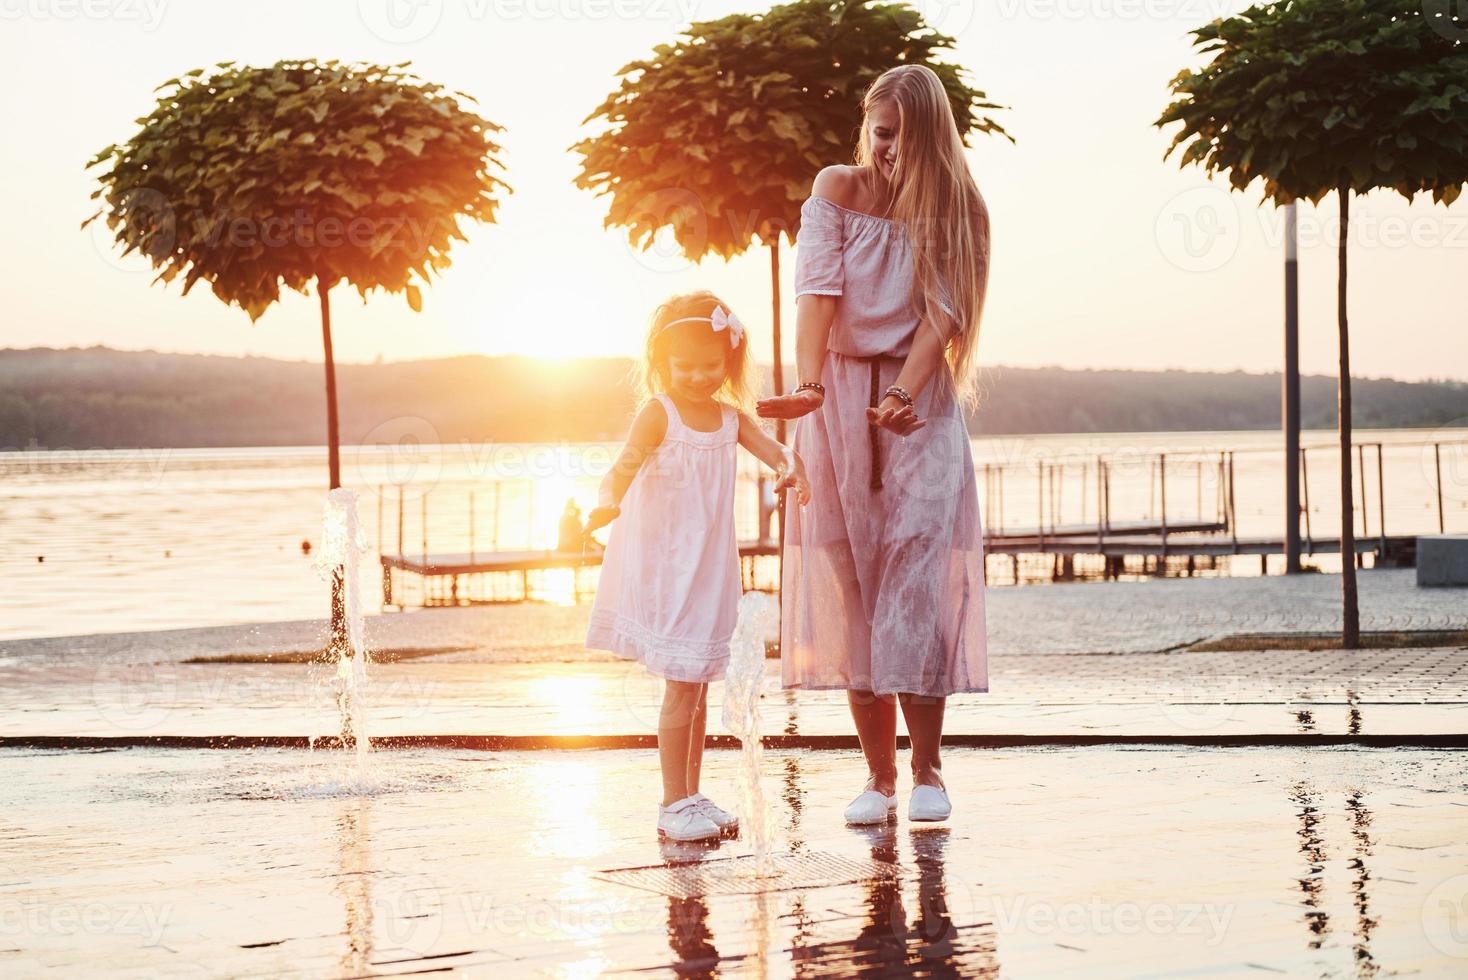 mamma con bambino vicino alla fontana al tramonto foto